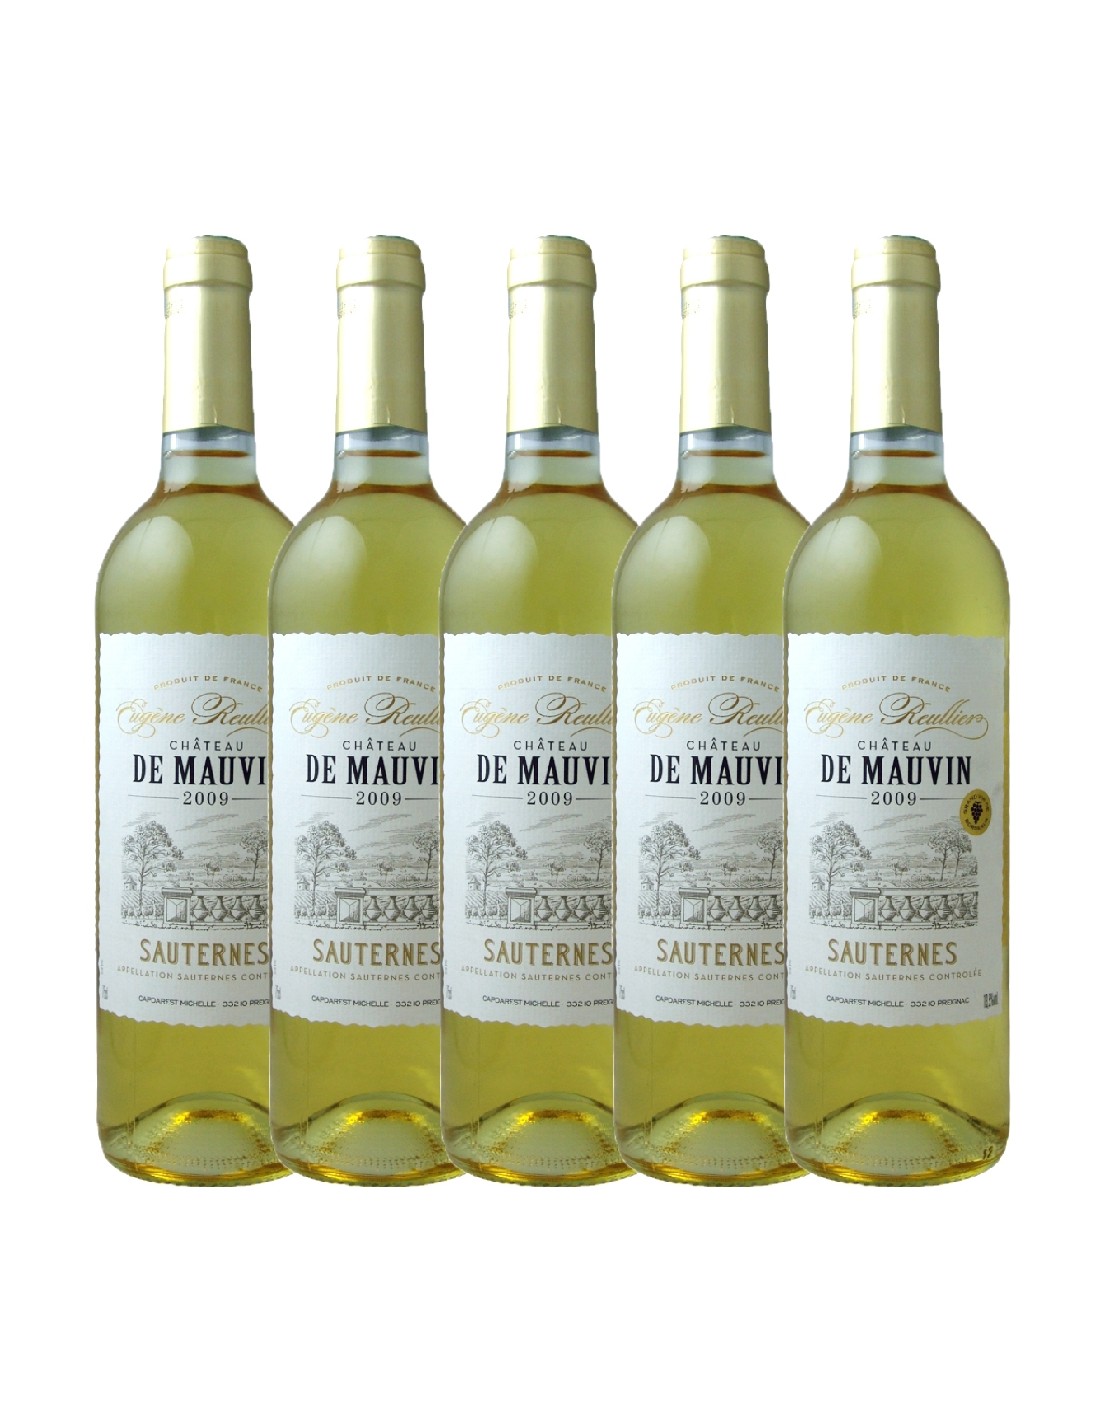 Pachet 5 sticle Vin alb dulce, Eugene Reulier Chateau de Mauvin Sauternes, 0.75L, Franta